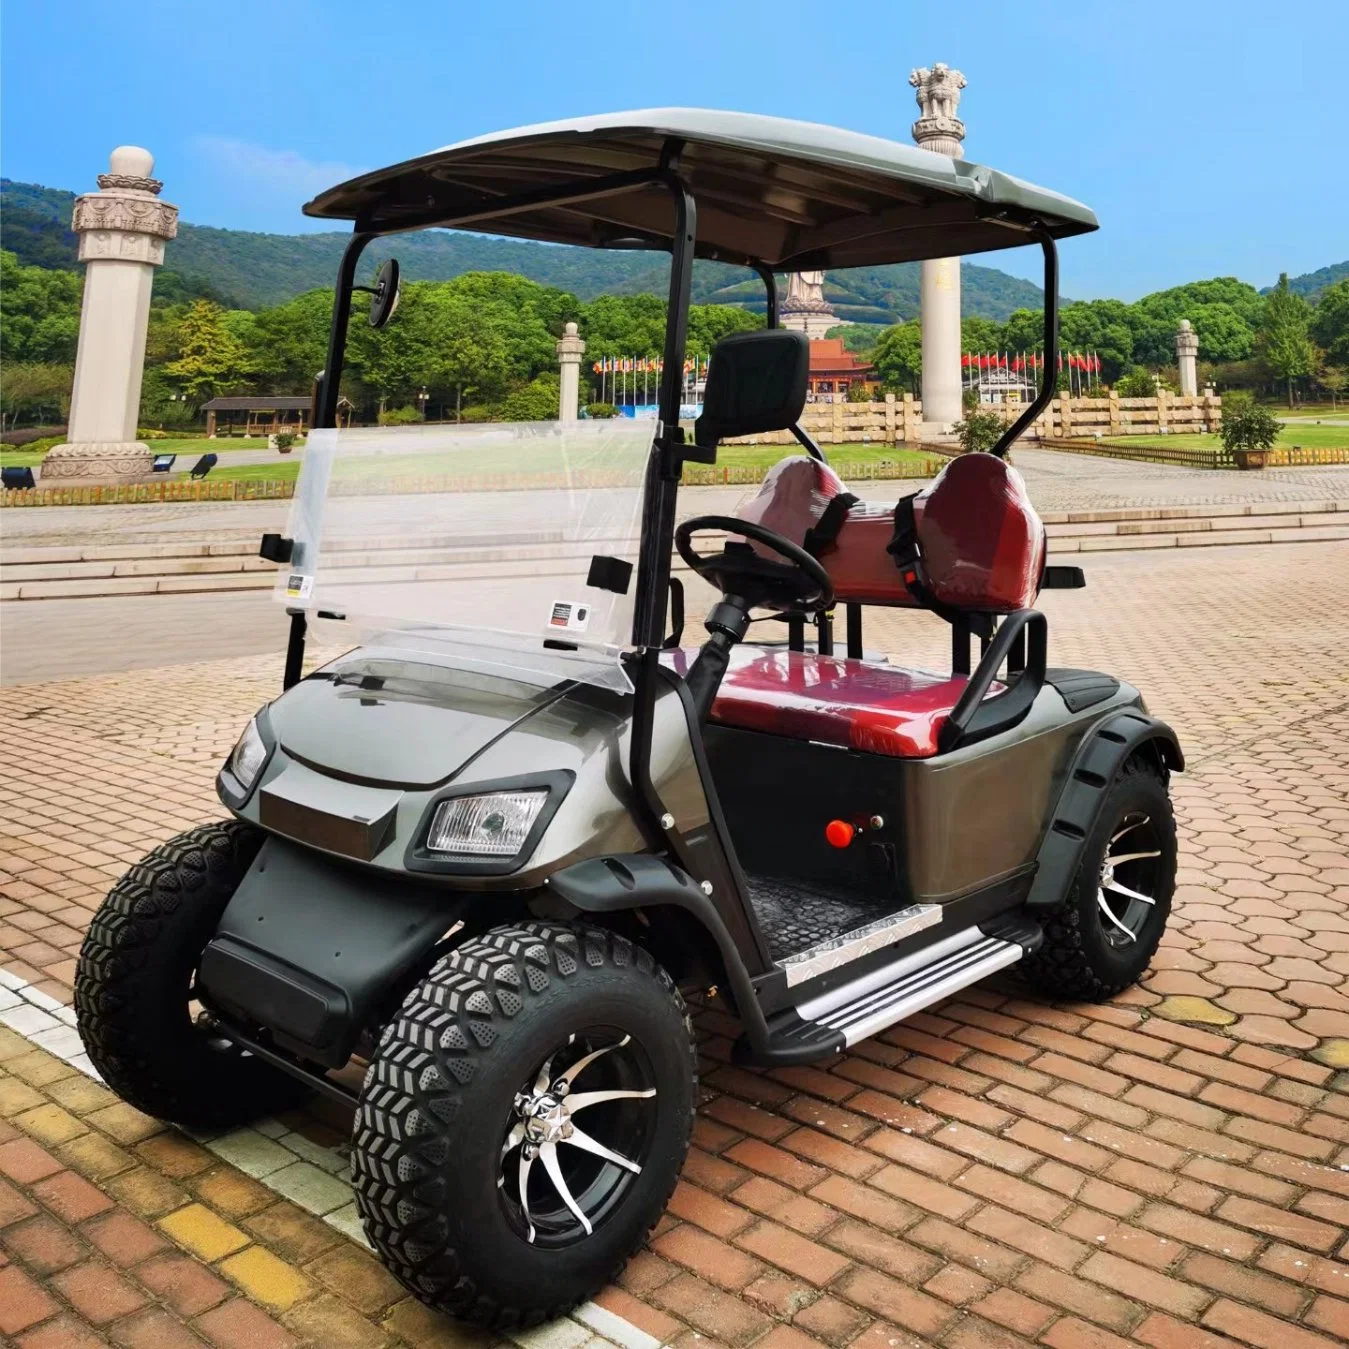 6 Пассажир одобренная тележка для гольфа Cargo низкие цены 4+2 мест Club Car Golf Cart Airport Electric Car